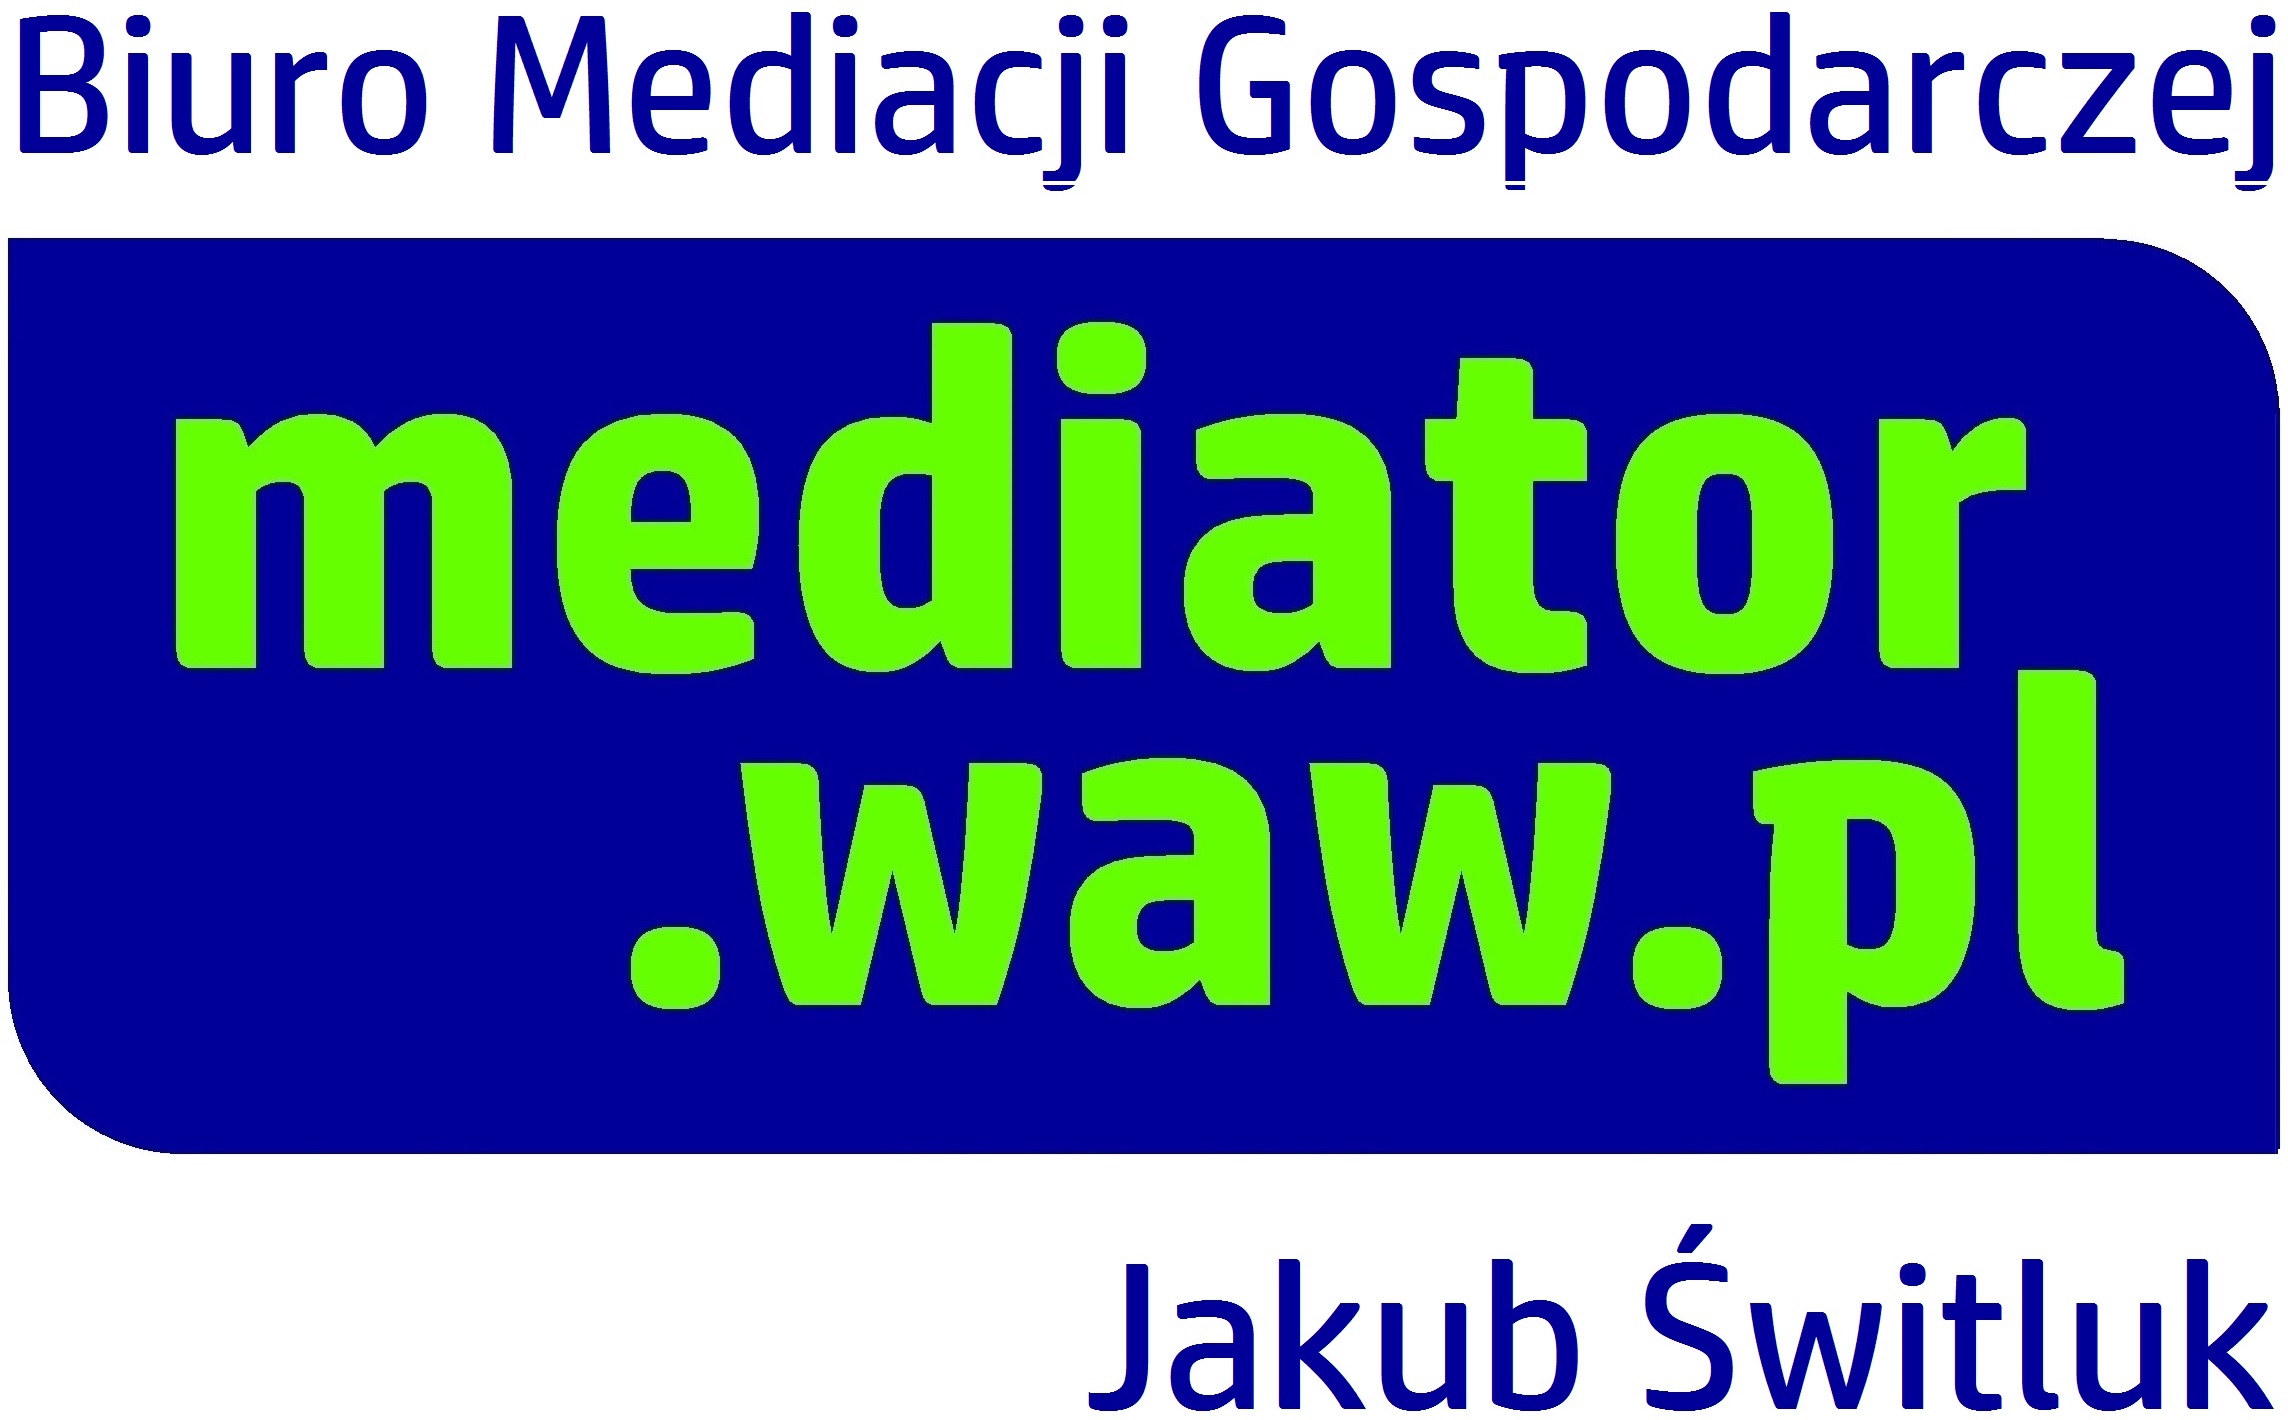 Biuro Mediacji Gospodarczej MEDIATOR.WAW.PL JAKUB ŚWITLUK